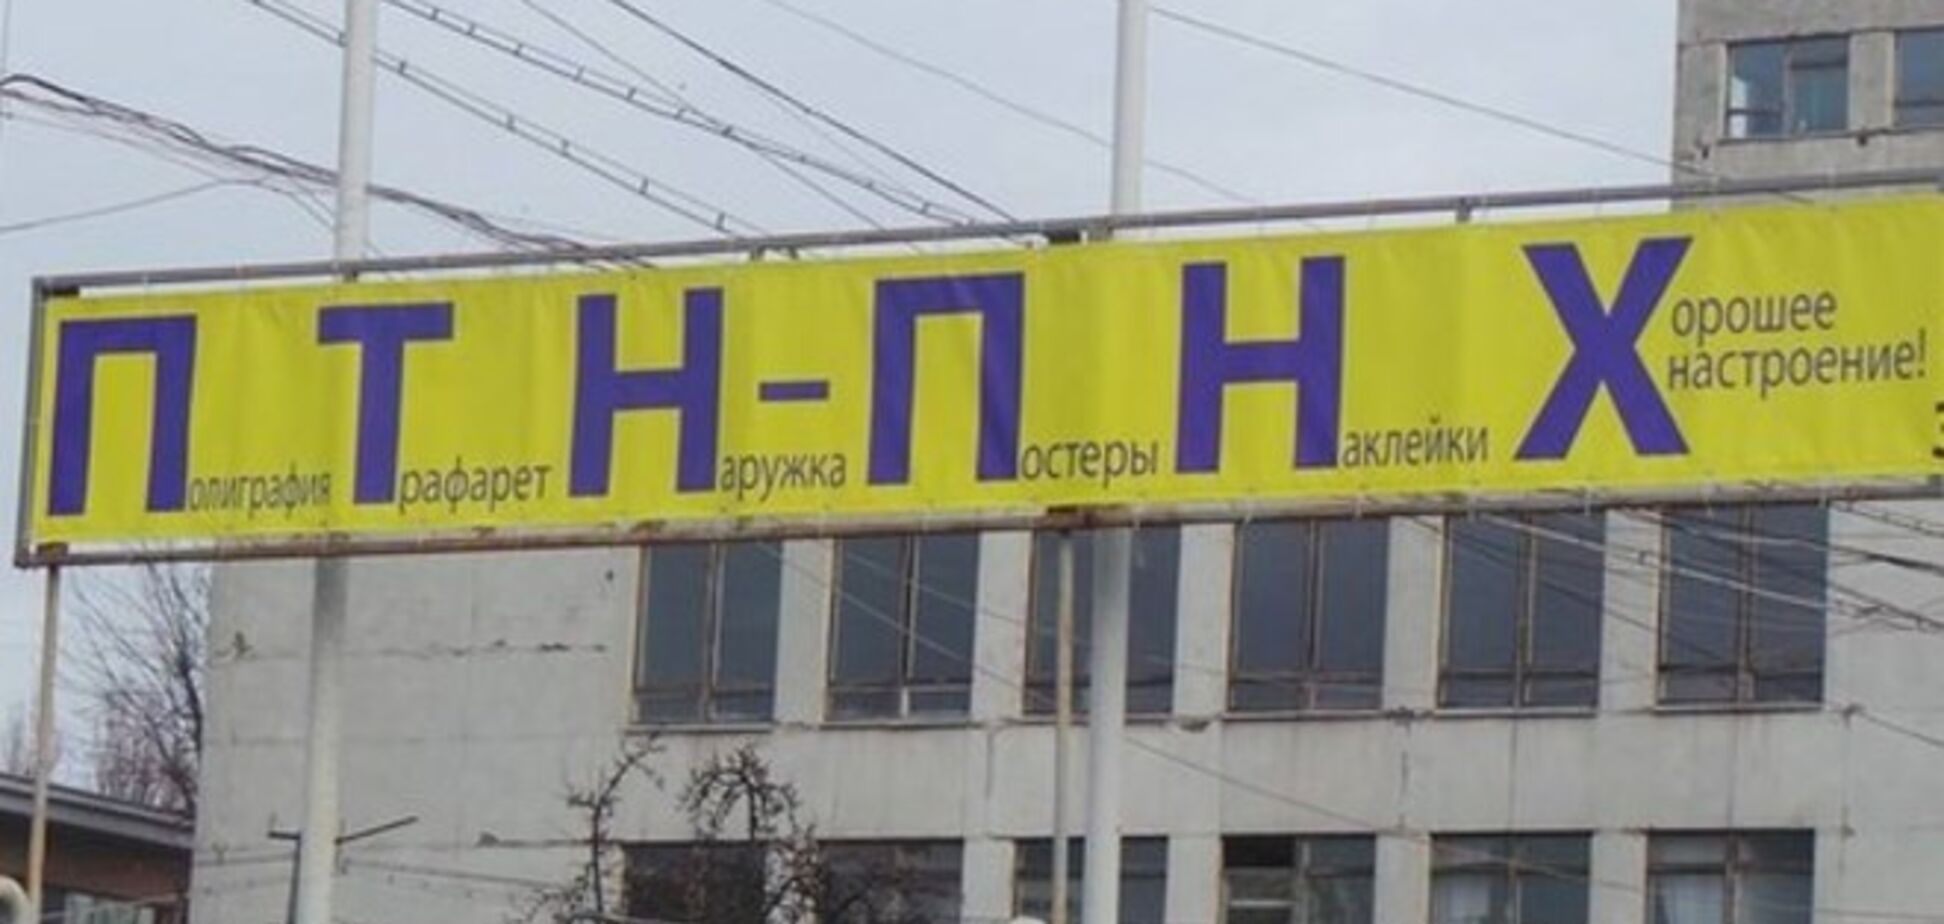 В Киеве появилась реклама с ПТН-ПНХ: опубликовано фото